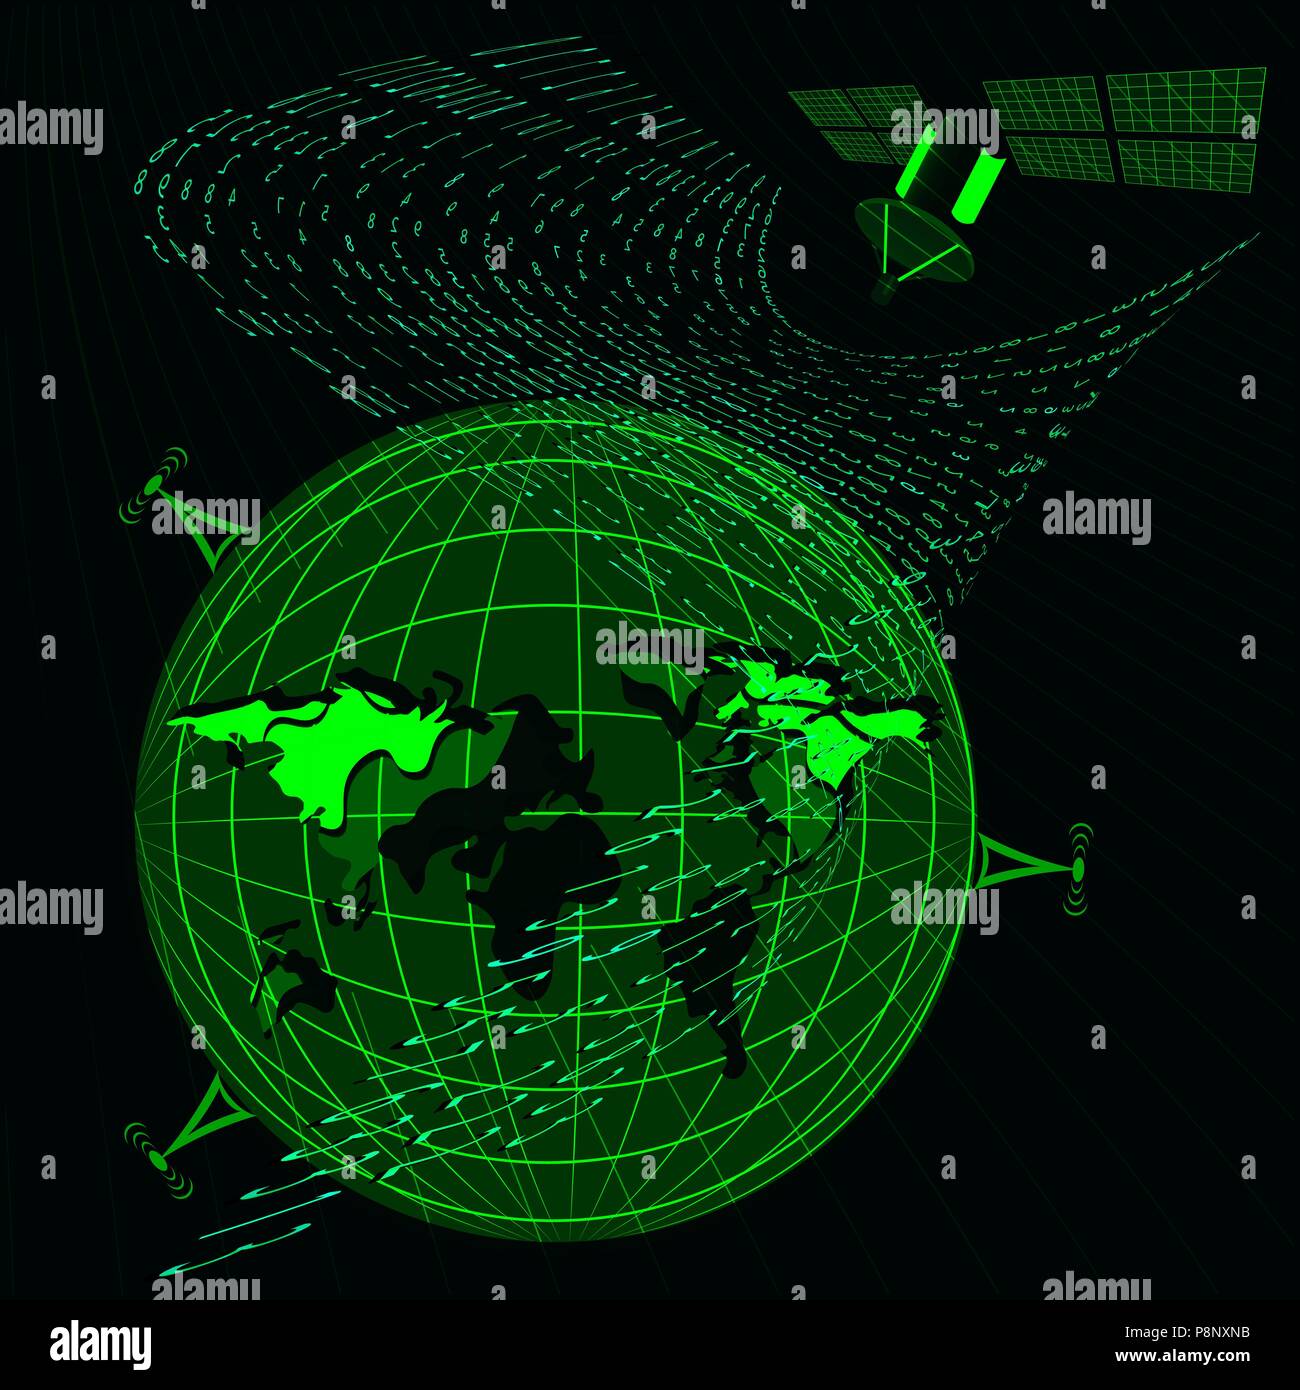 Hintergrund in einer Matrix Stil. Antenne, Satellit, der Erde. Der zufallszahlen. Grün ist dominierende Farbe. Vector Illustration Stock Vektor